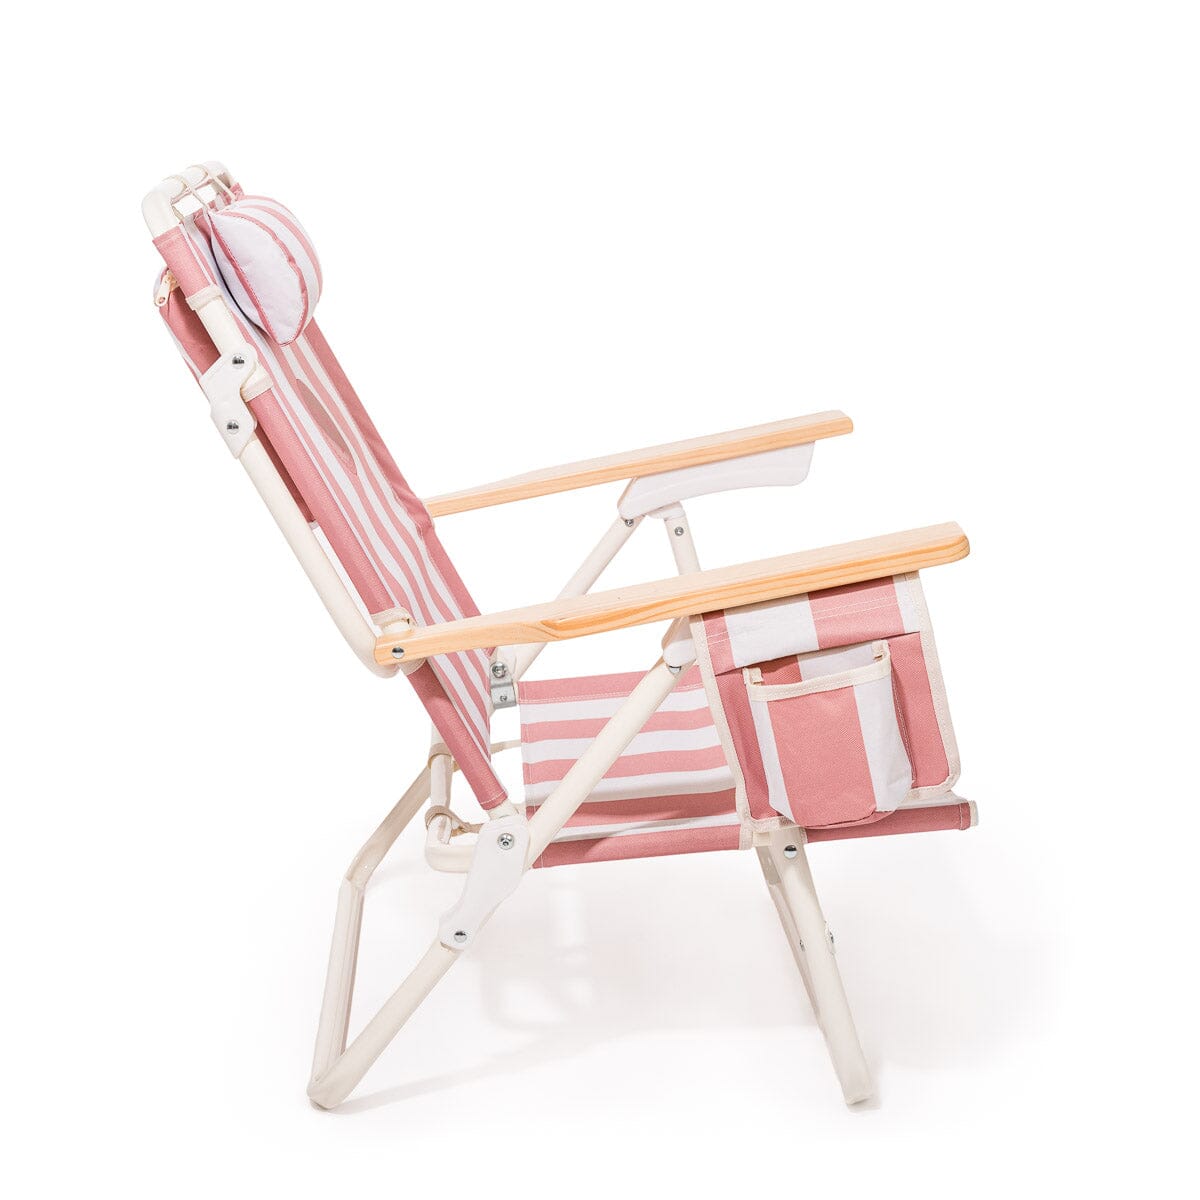 The Mañana Chair - Strawberry Daiquiri Stripe Mañana Beach Chair Margaritaville by B&P Co. 